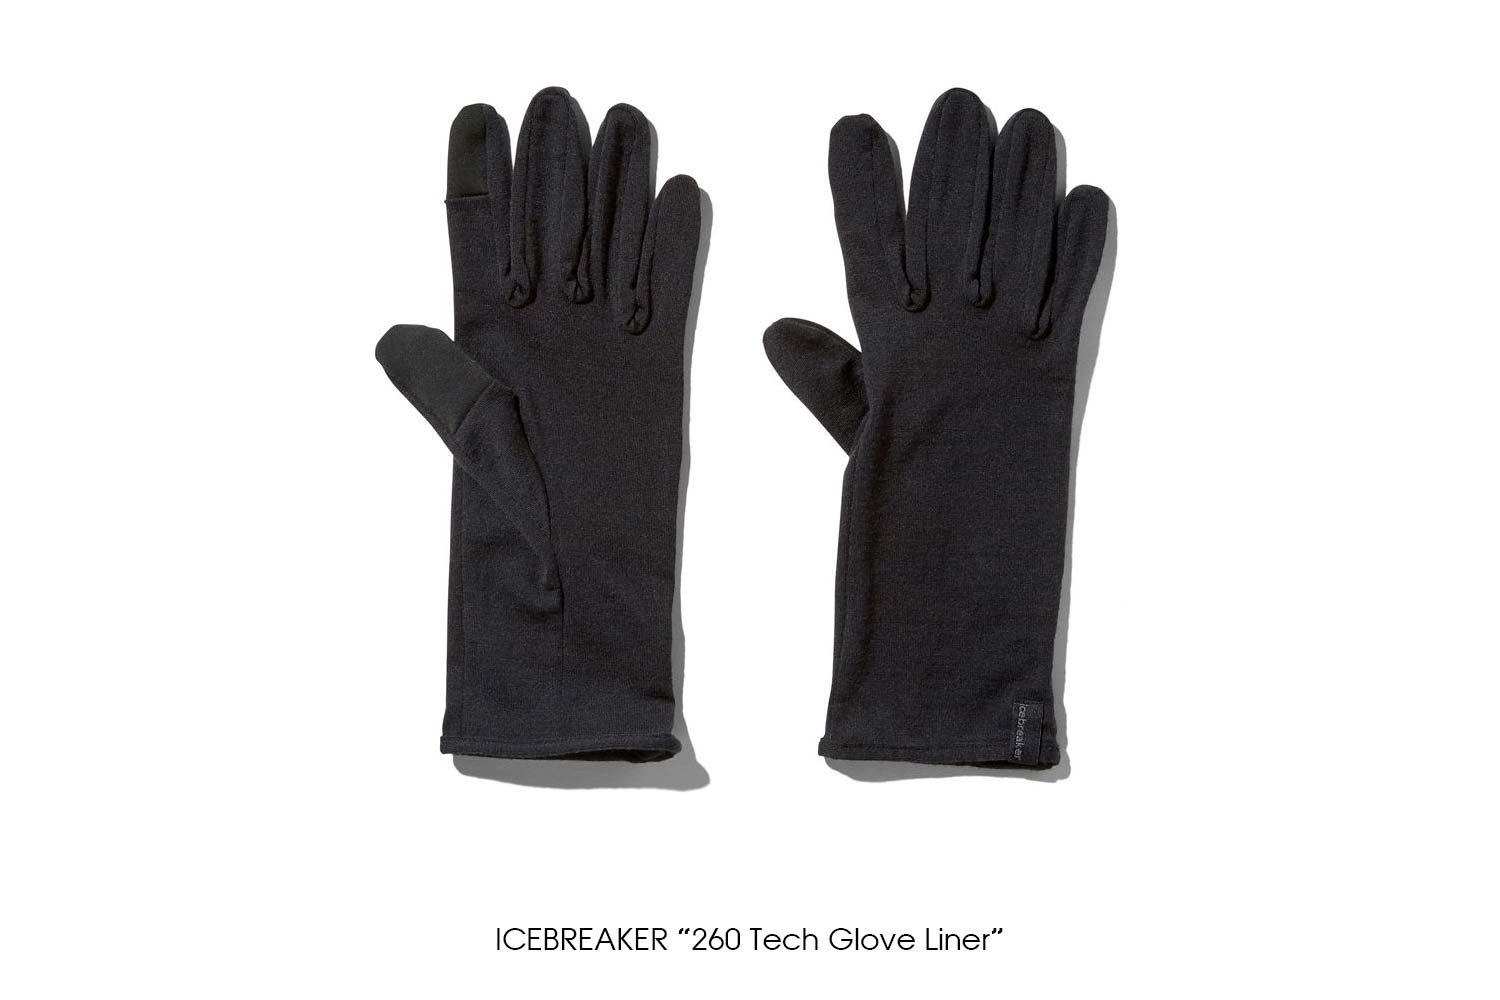 ICEBREAKER "260 Tech Glove Liner"